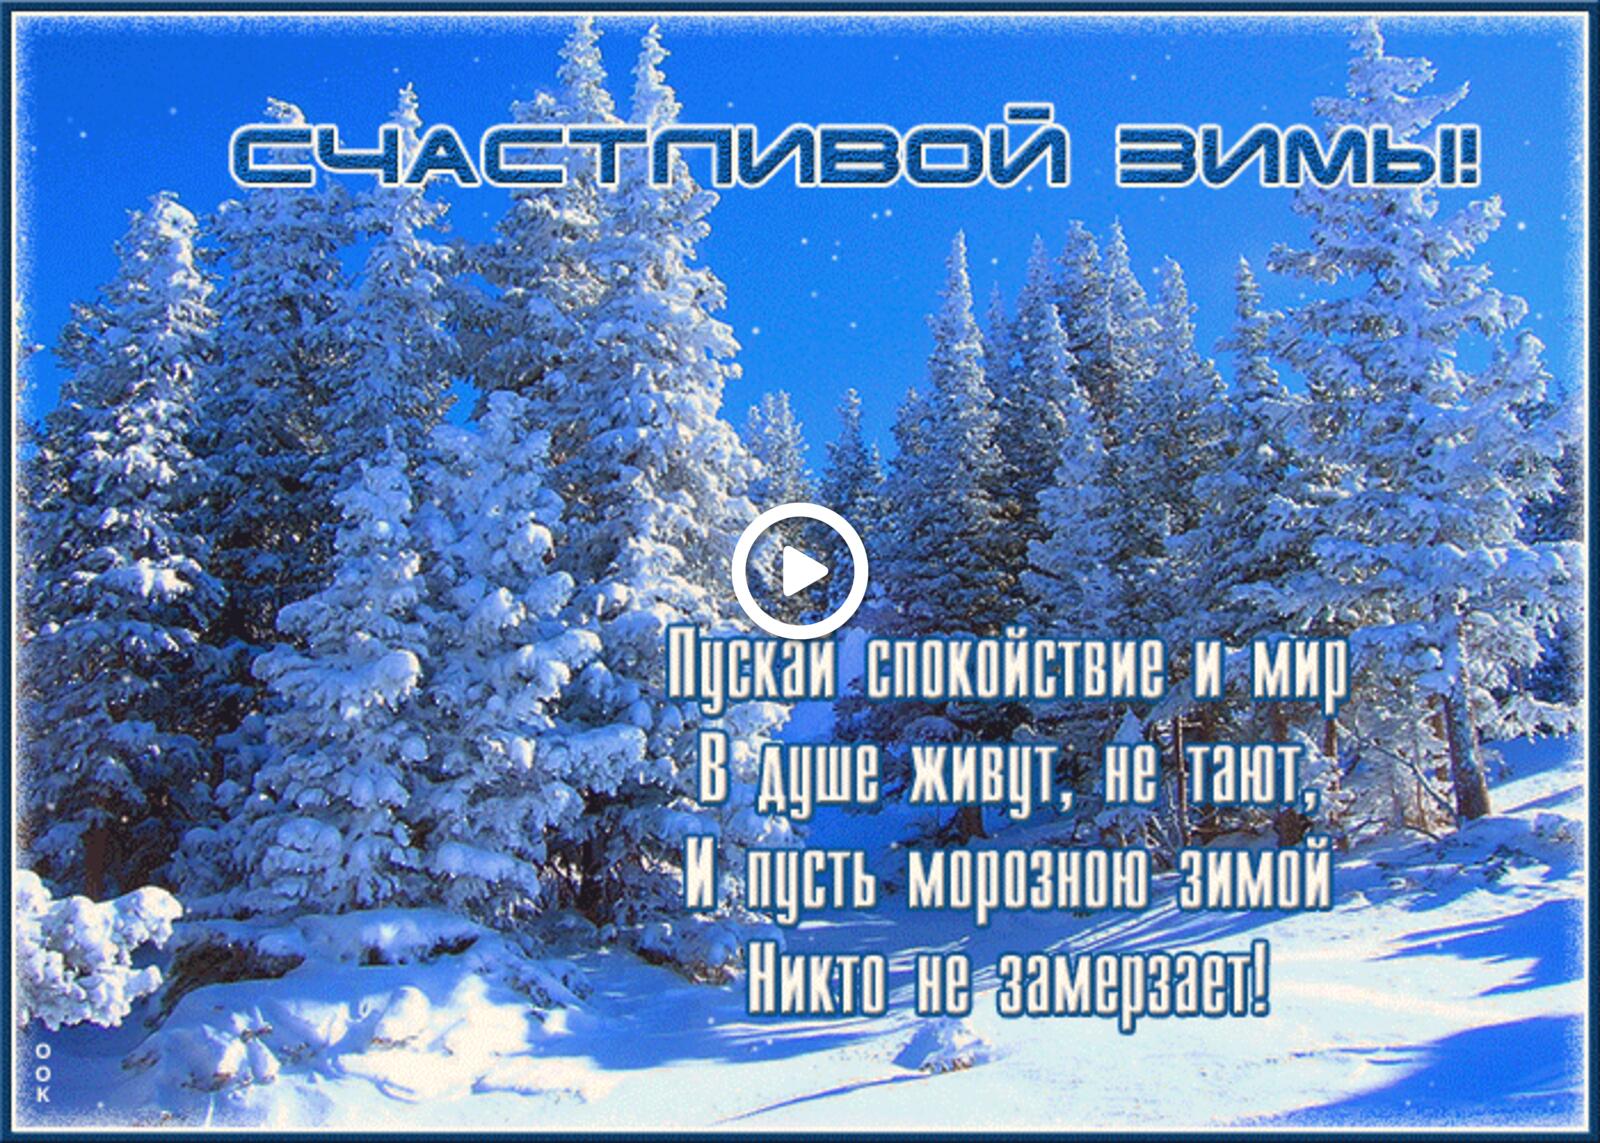 一张以绚丽多彩的祝愿之冬图 冬季 雪为主题的明信片